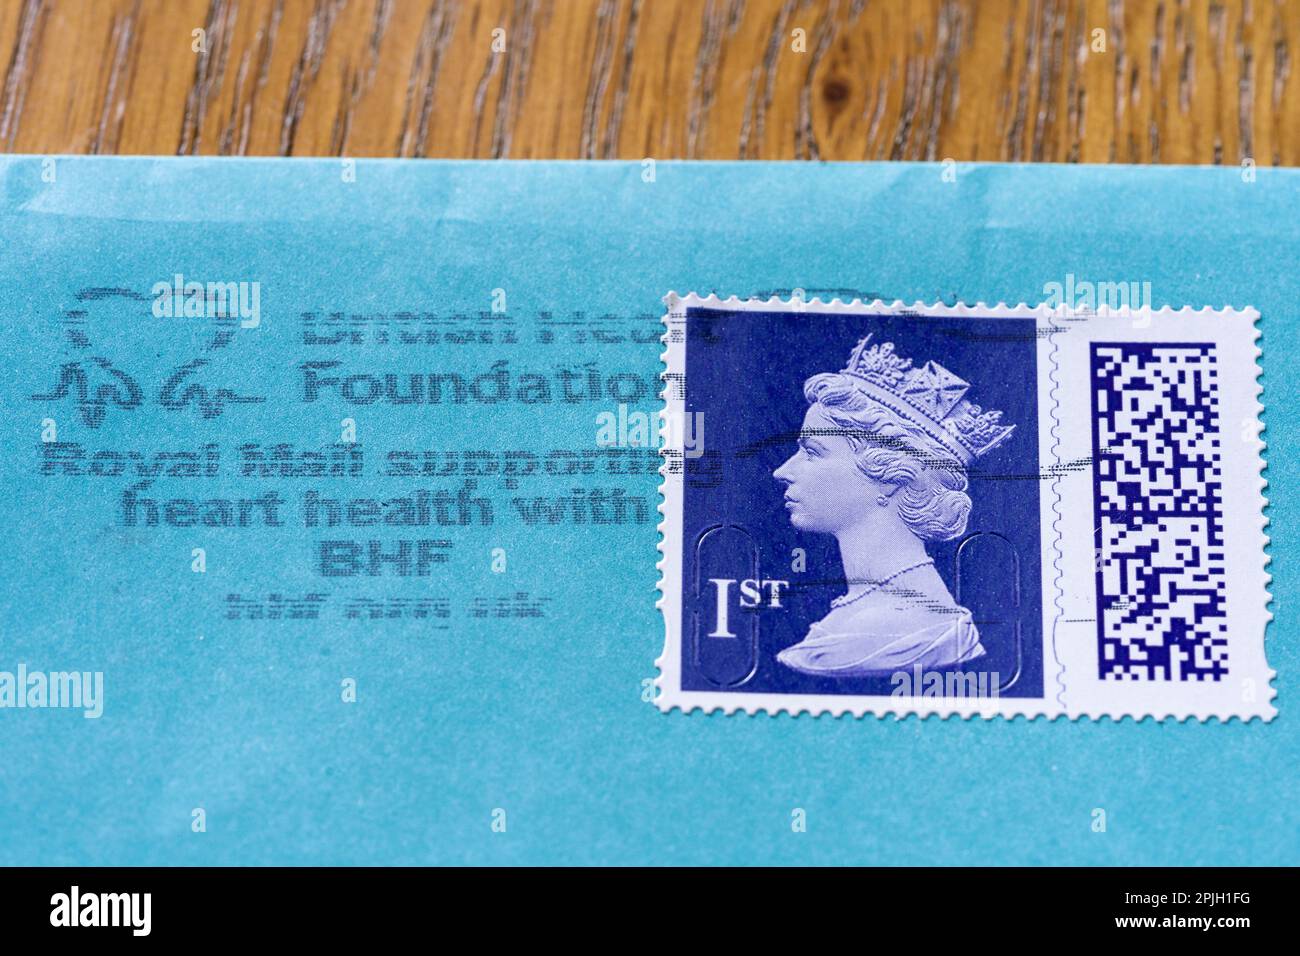 Royal Mail erste Klasse Elizabeth II Stempel mit QR-Code, auf einem Umschlag und Franziskus mit Royal Mail unterstützt Wohltätigkeitsorganisationen und wohltätige Zwecke Stockfoto